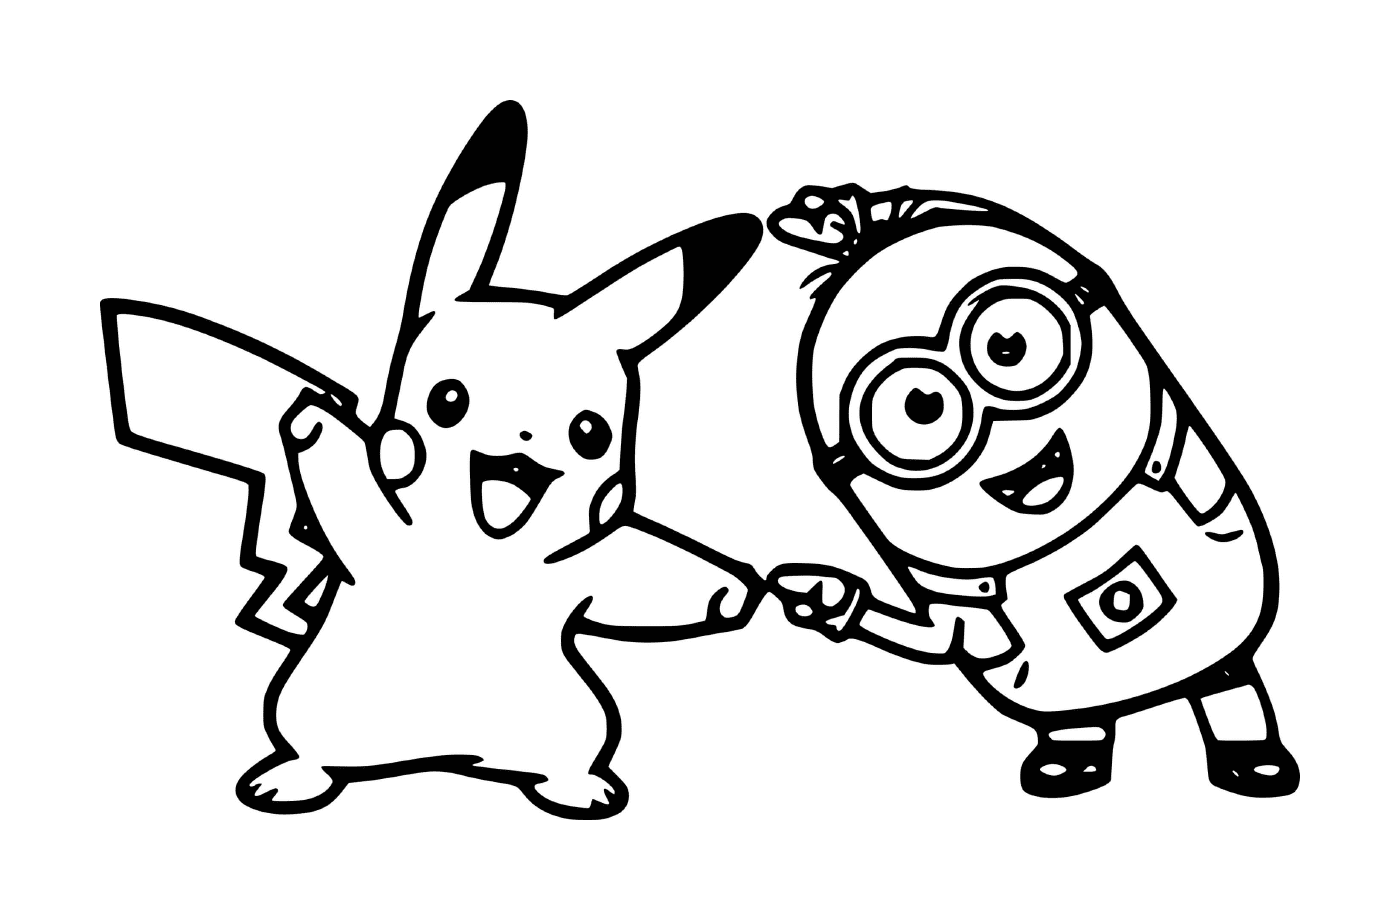  Minion y Pikachu juntos 